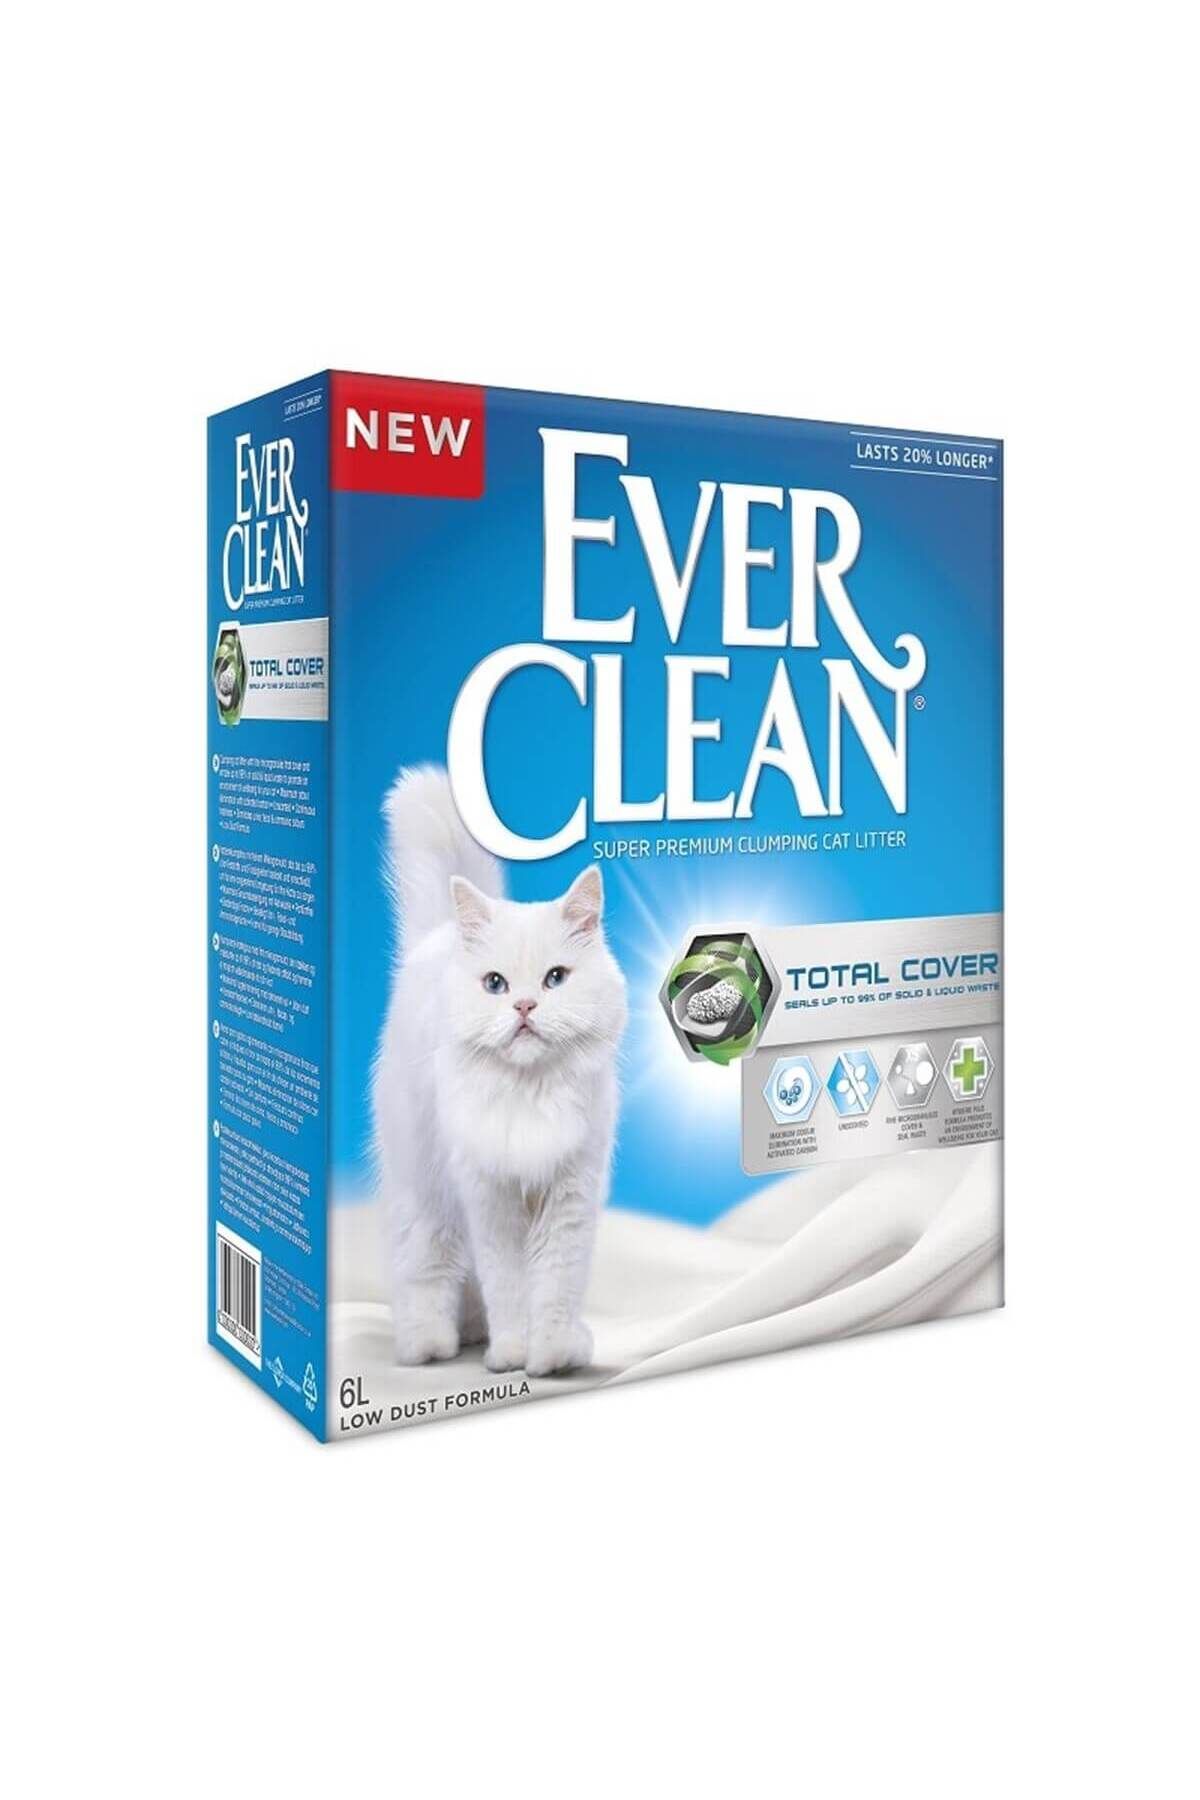 Ever Clean Total Cover Kedi Kumu 10 Lt